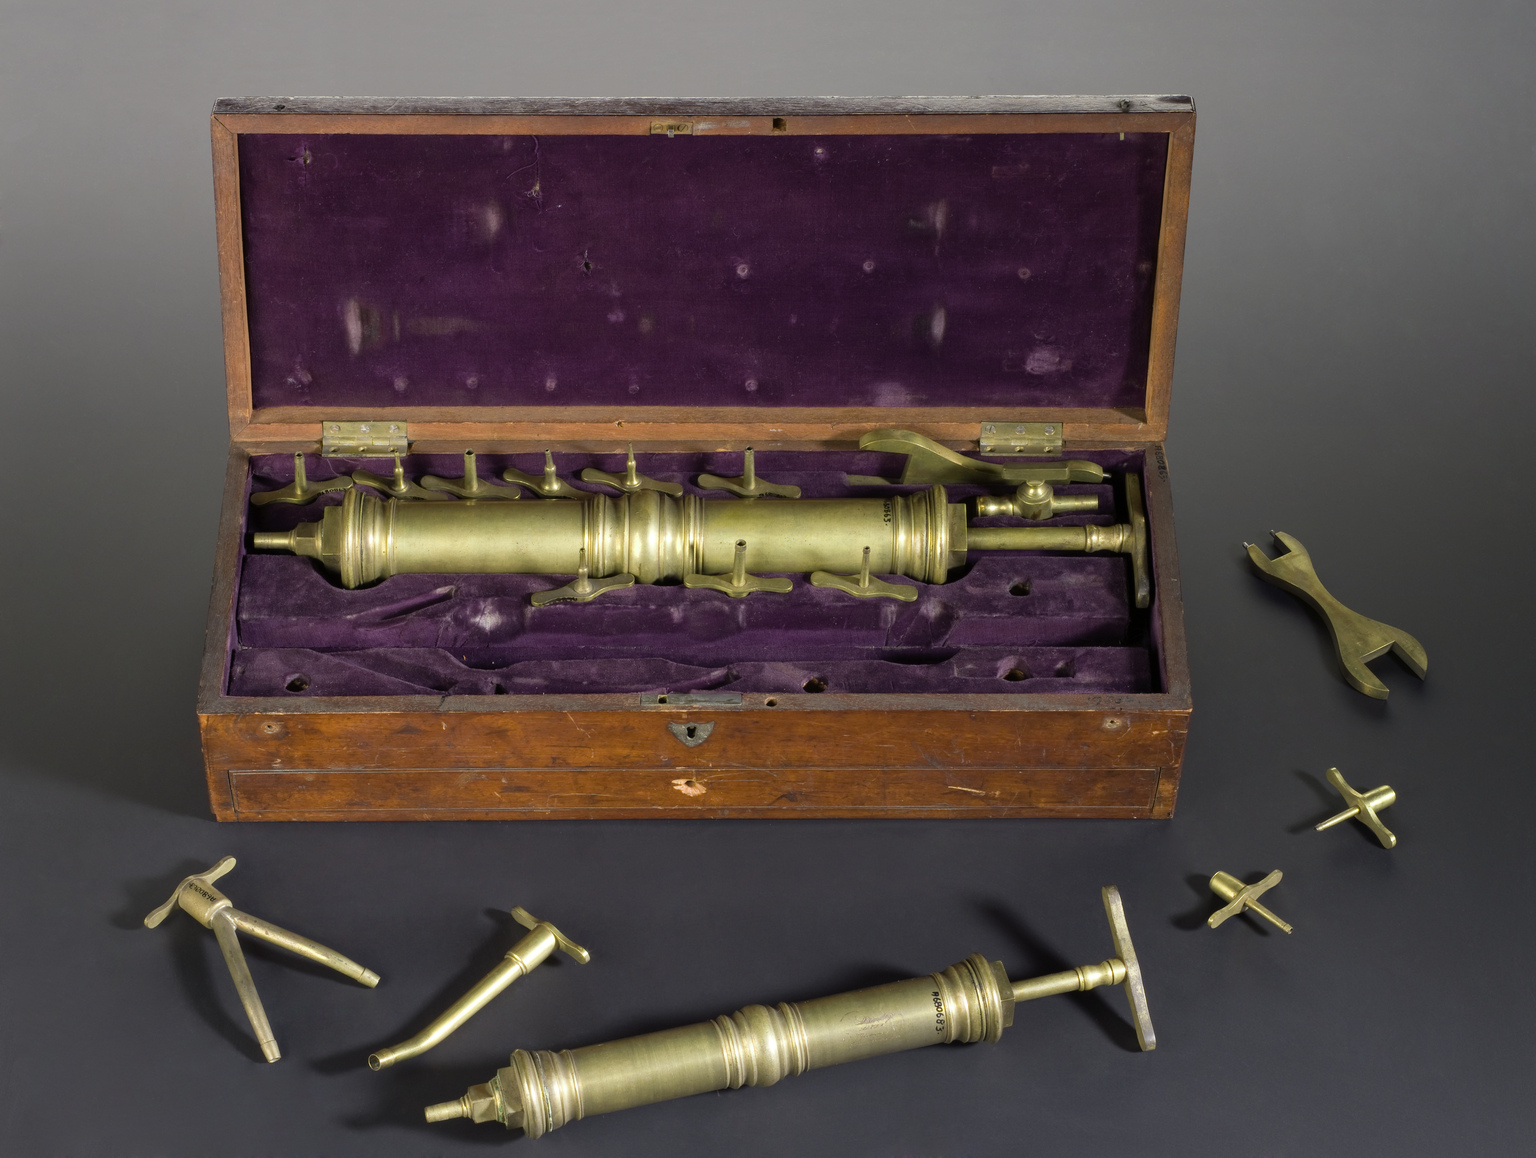 Embalming syringe set, made by Laundy, St.Thomas's St., Southwark, London, English, 1790-1845